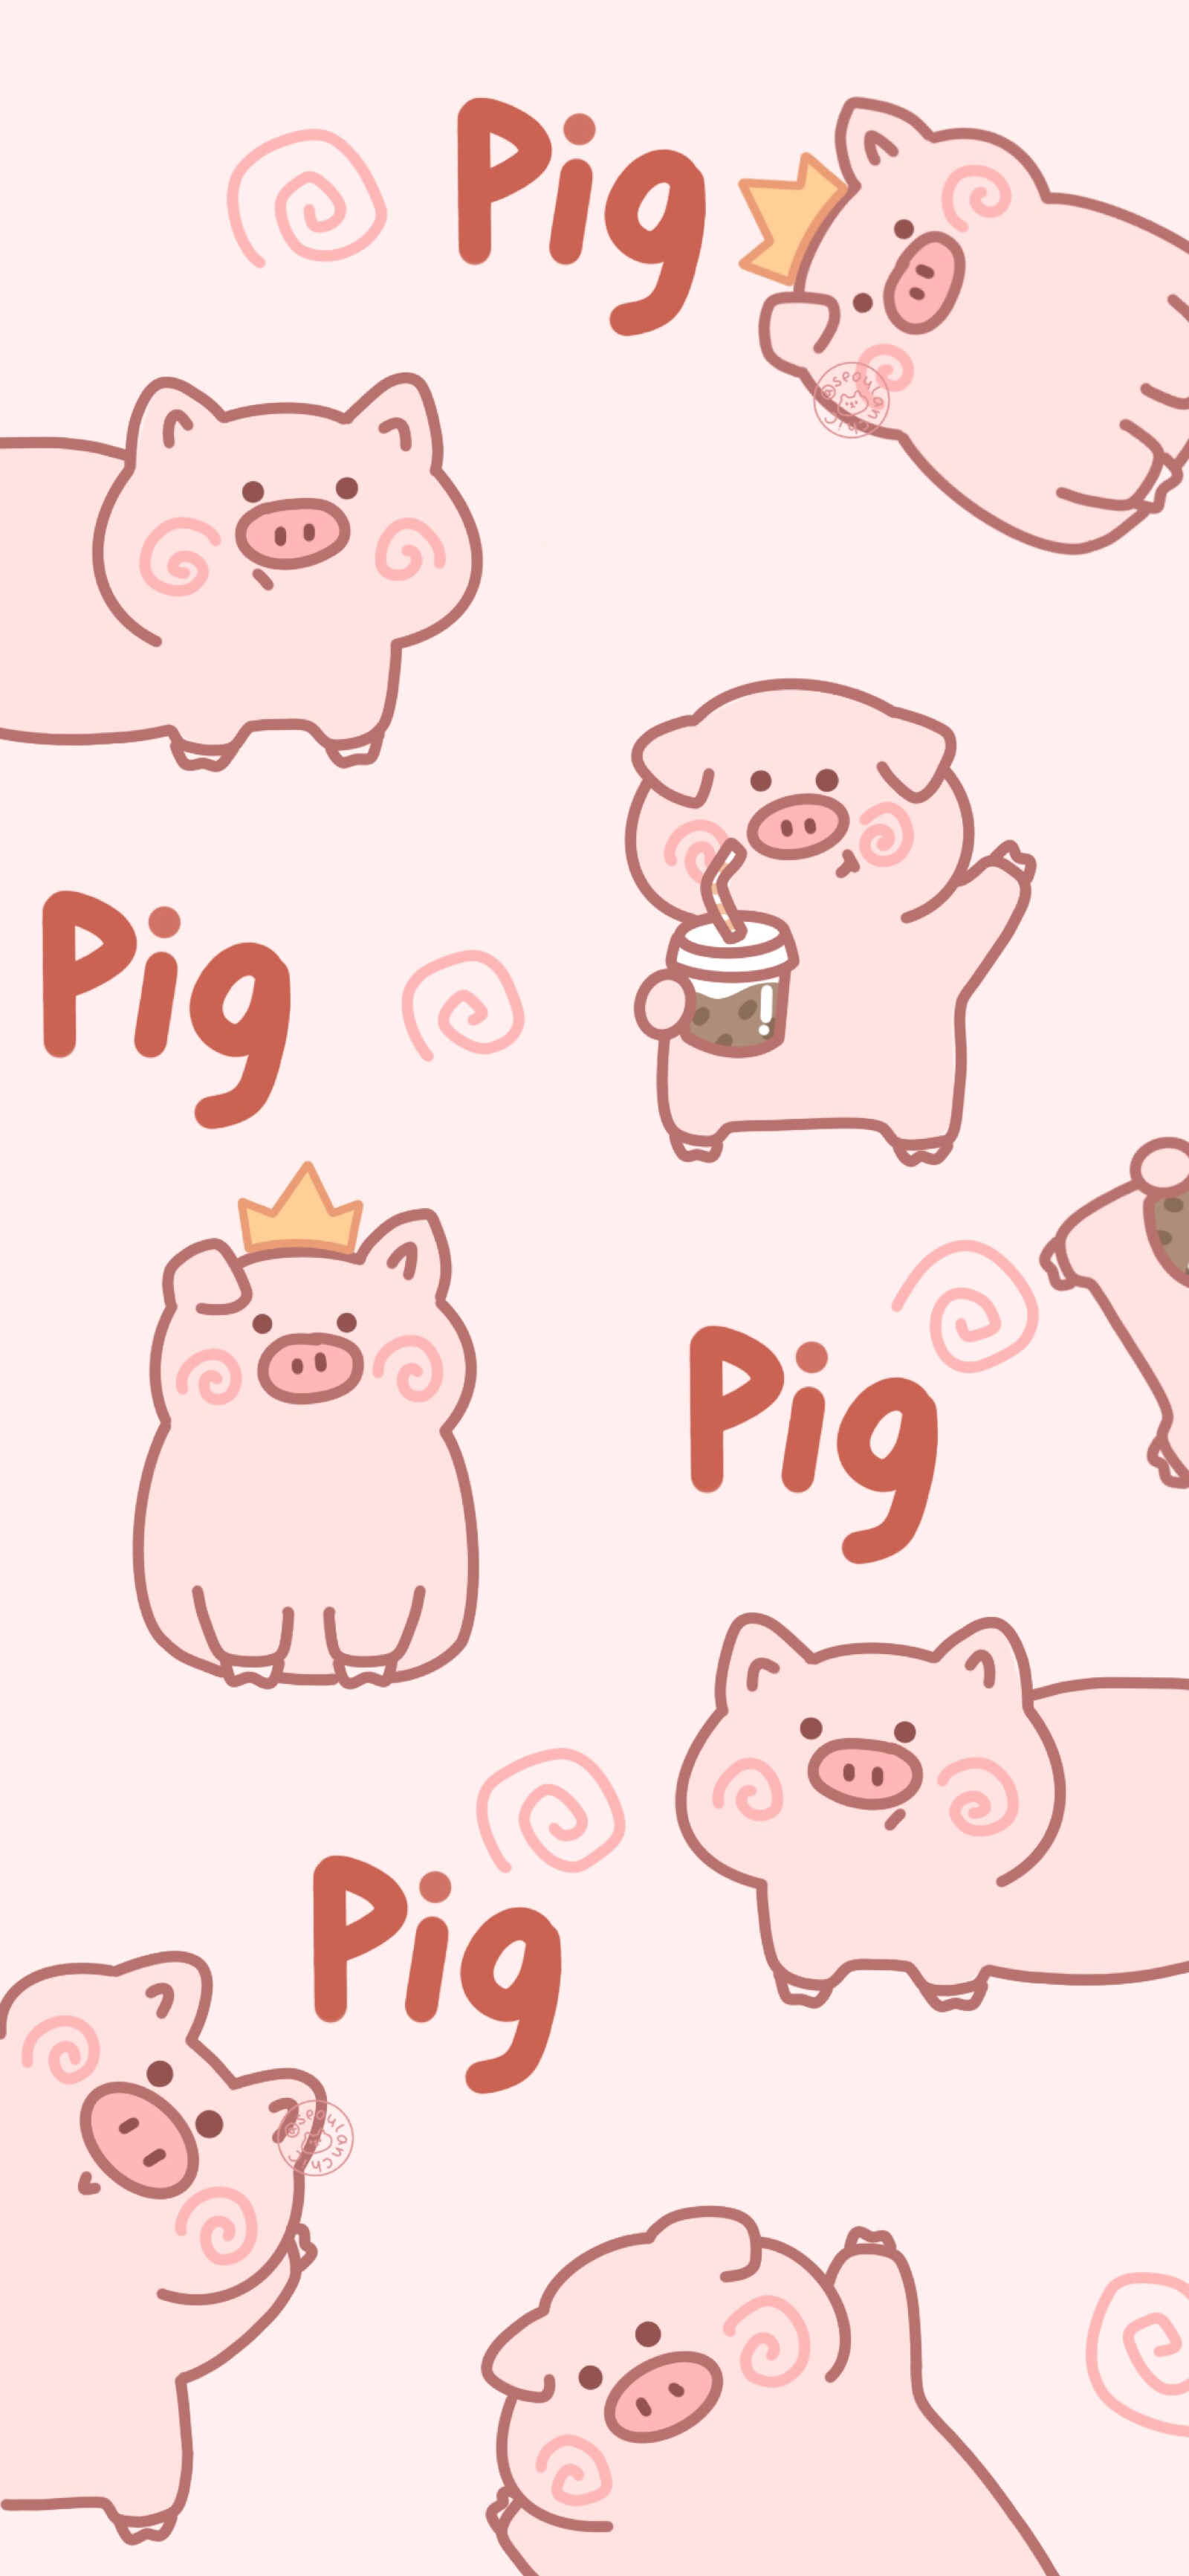 猪圈里讨食吃的小猪45806_动物合集_动物类_图库壁纸_68Design